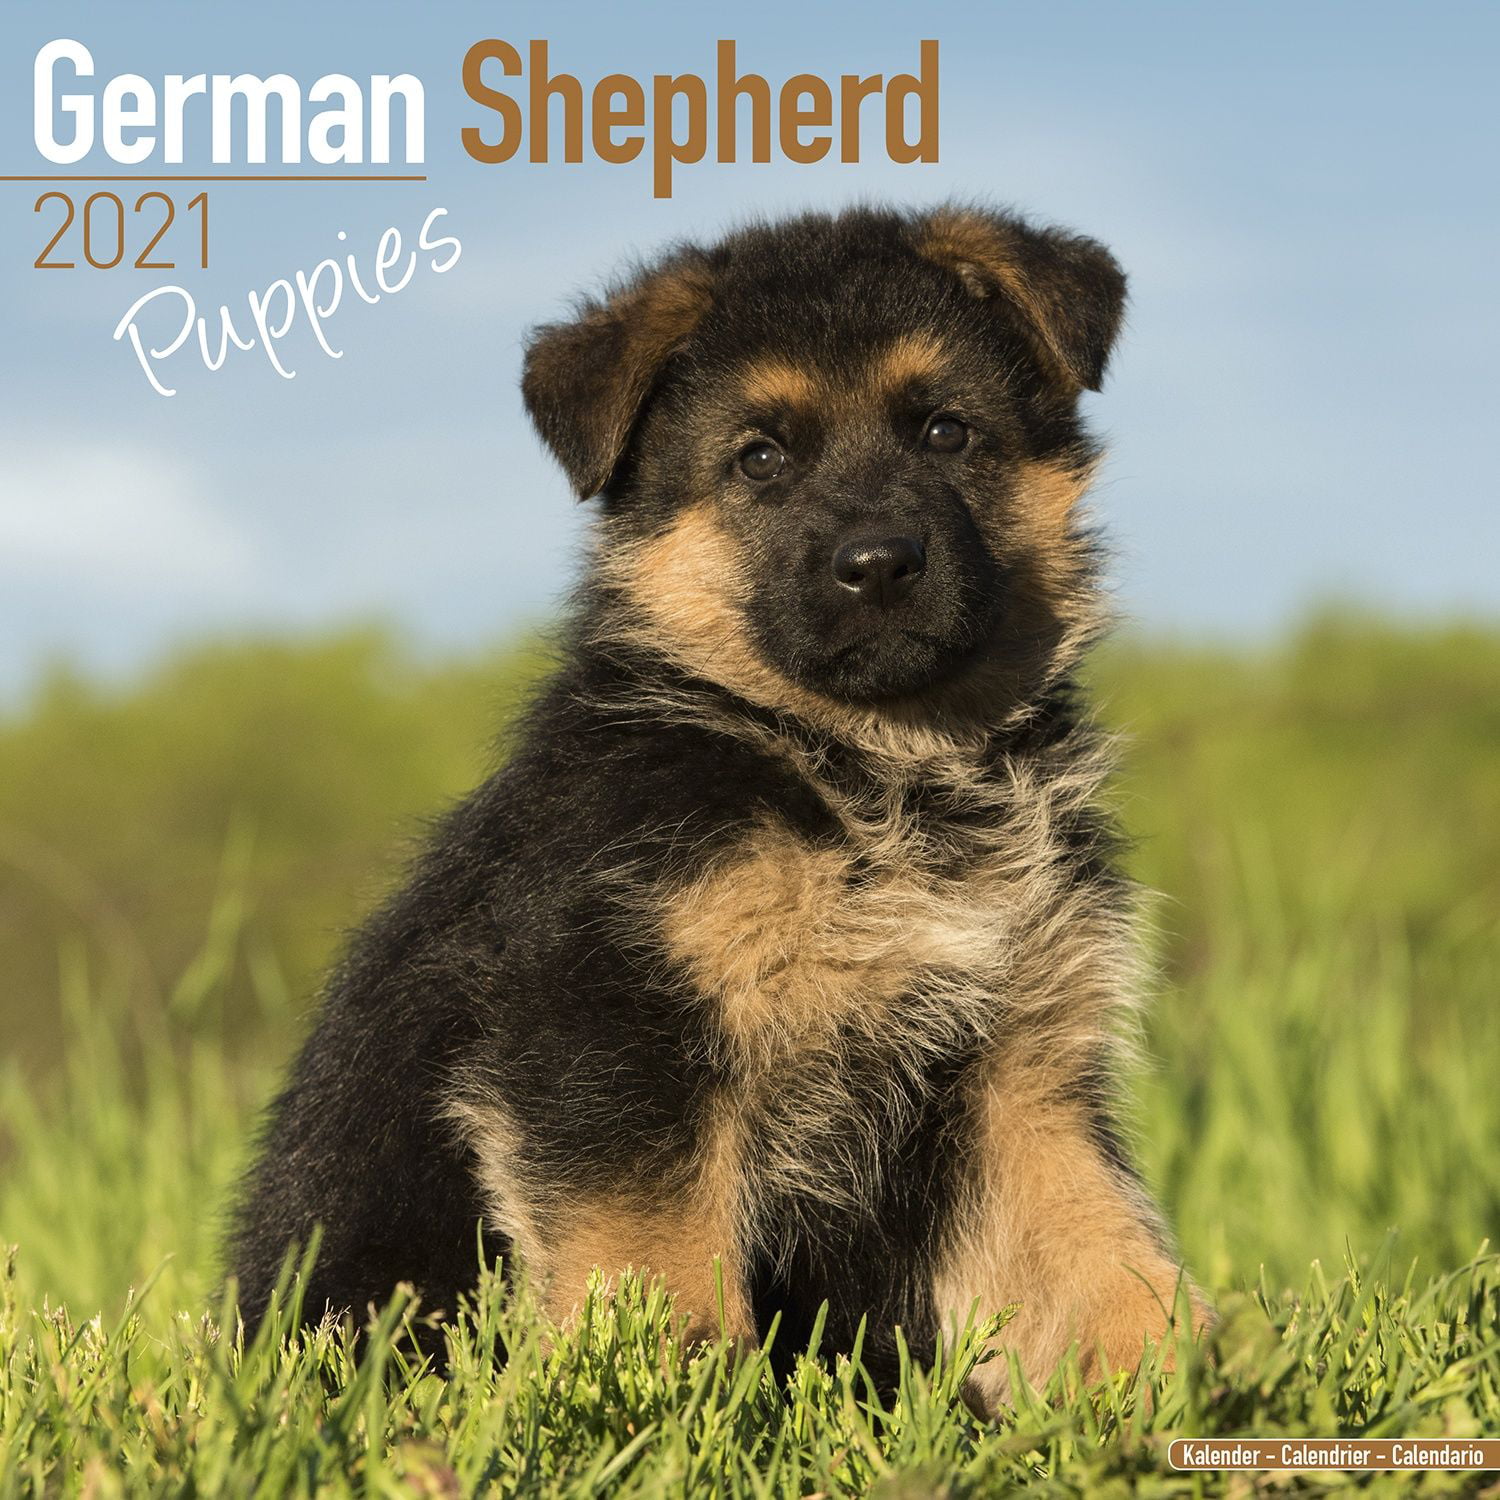 buy german shepherd puppy online